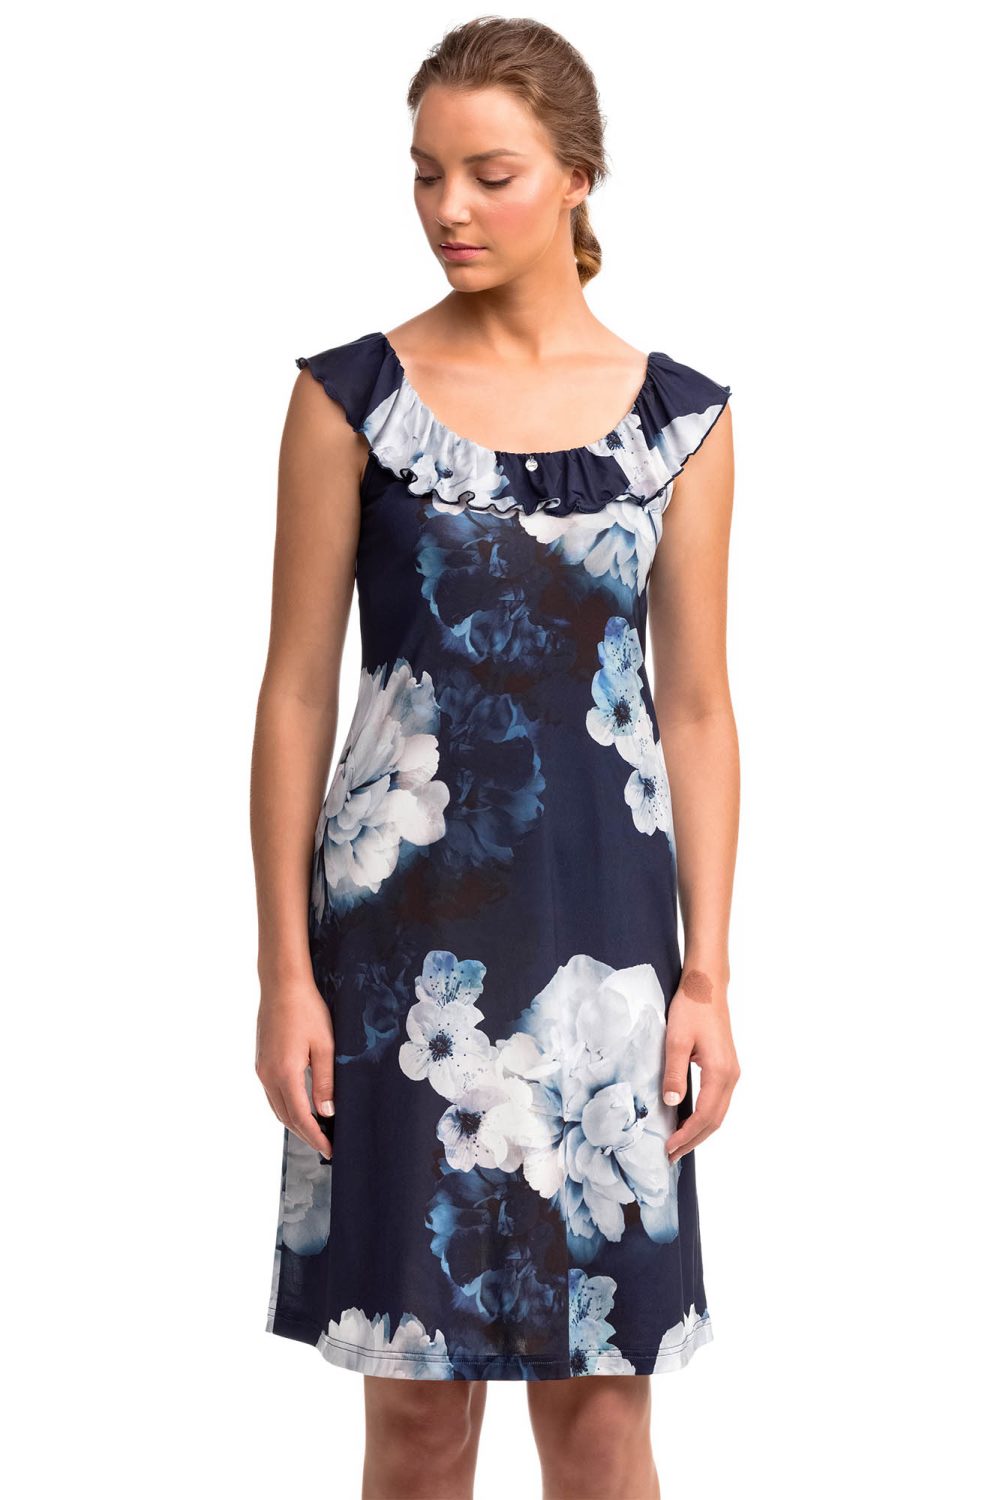 Vamp - Αμάνικο Φόρεμα με Βολάν 14464 BLUE MARINE